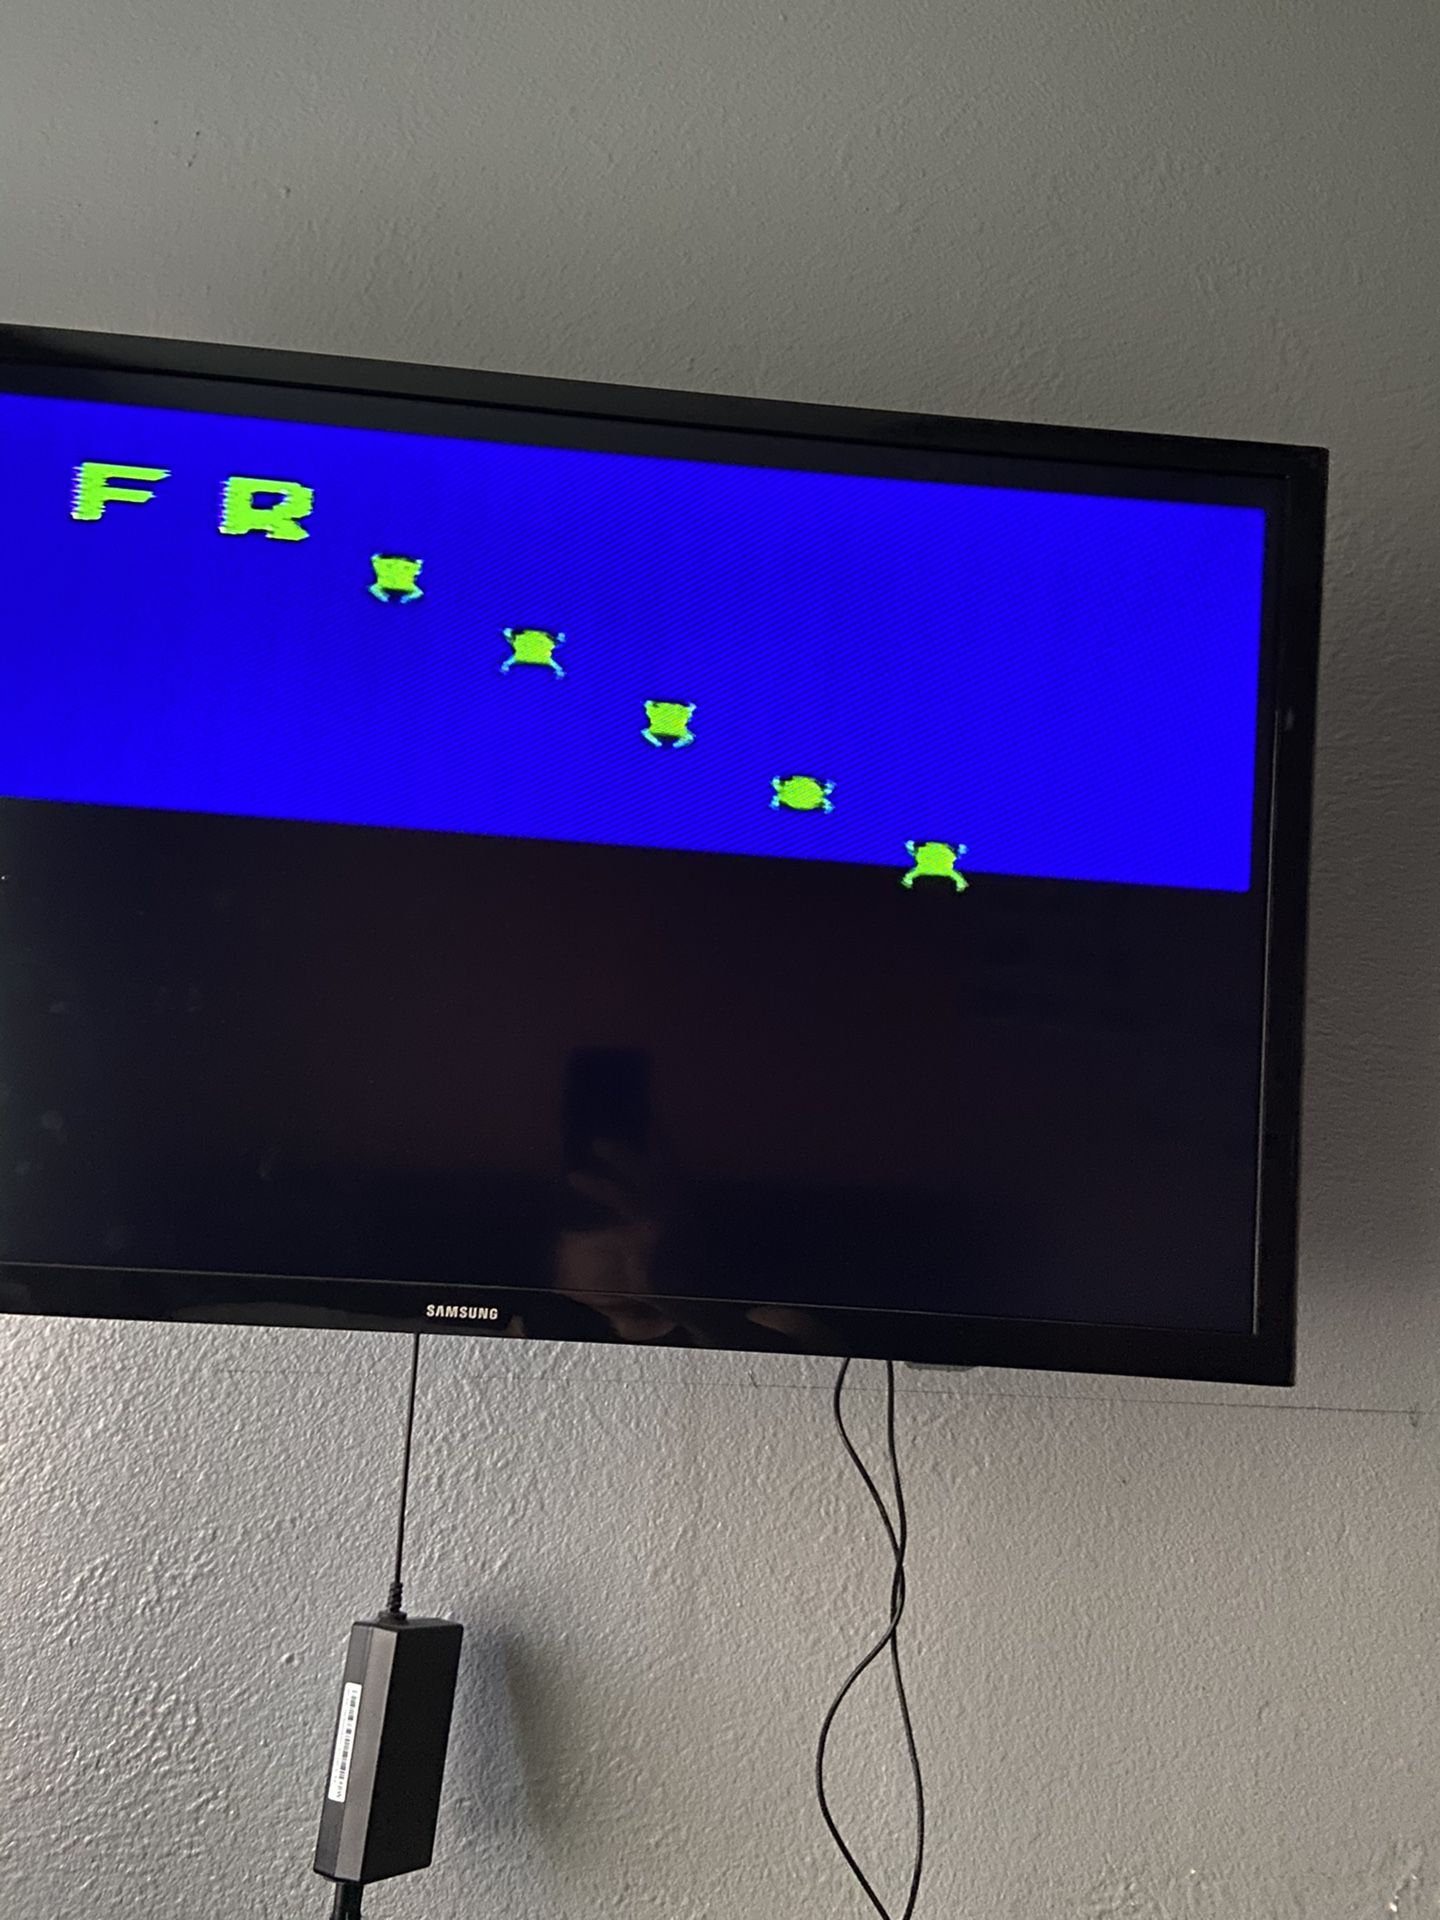 Frogger tv arcade game